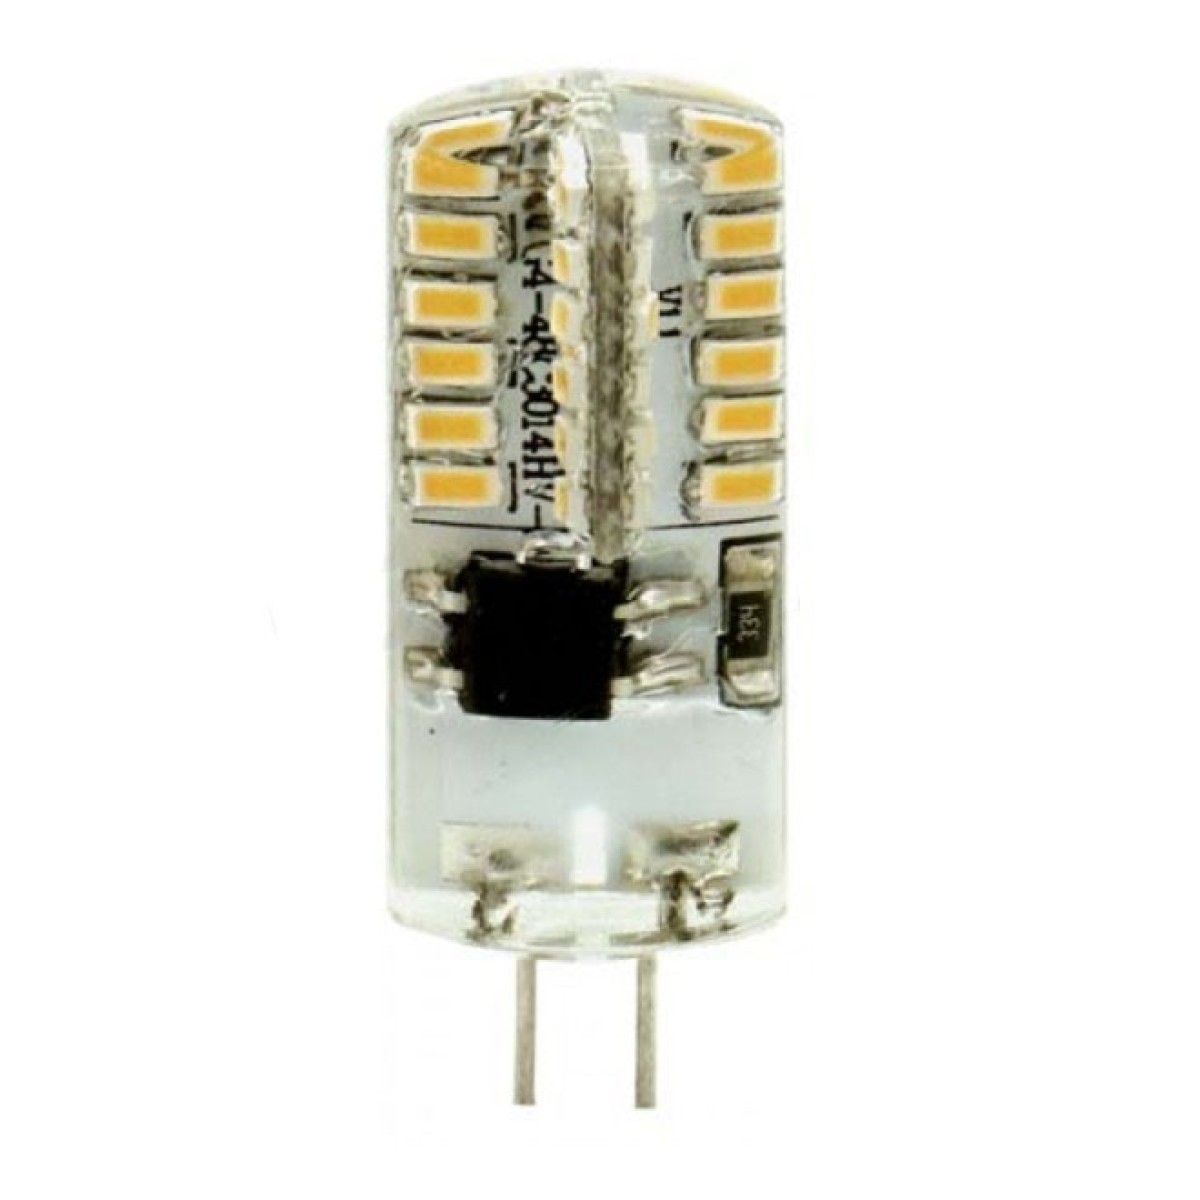 Світлодіодна лампа LB-522 (капсула) 3Вт 4000K G4, Feron 256_256.jpg